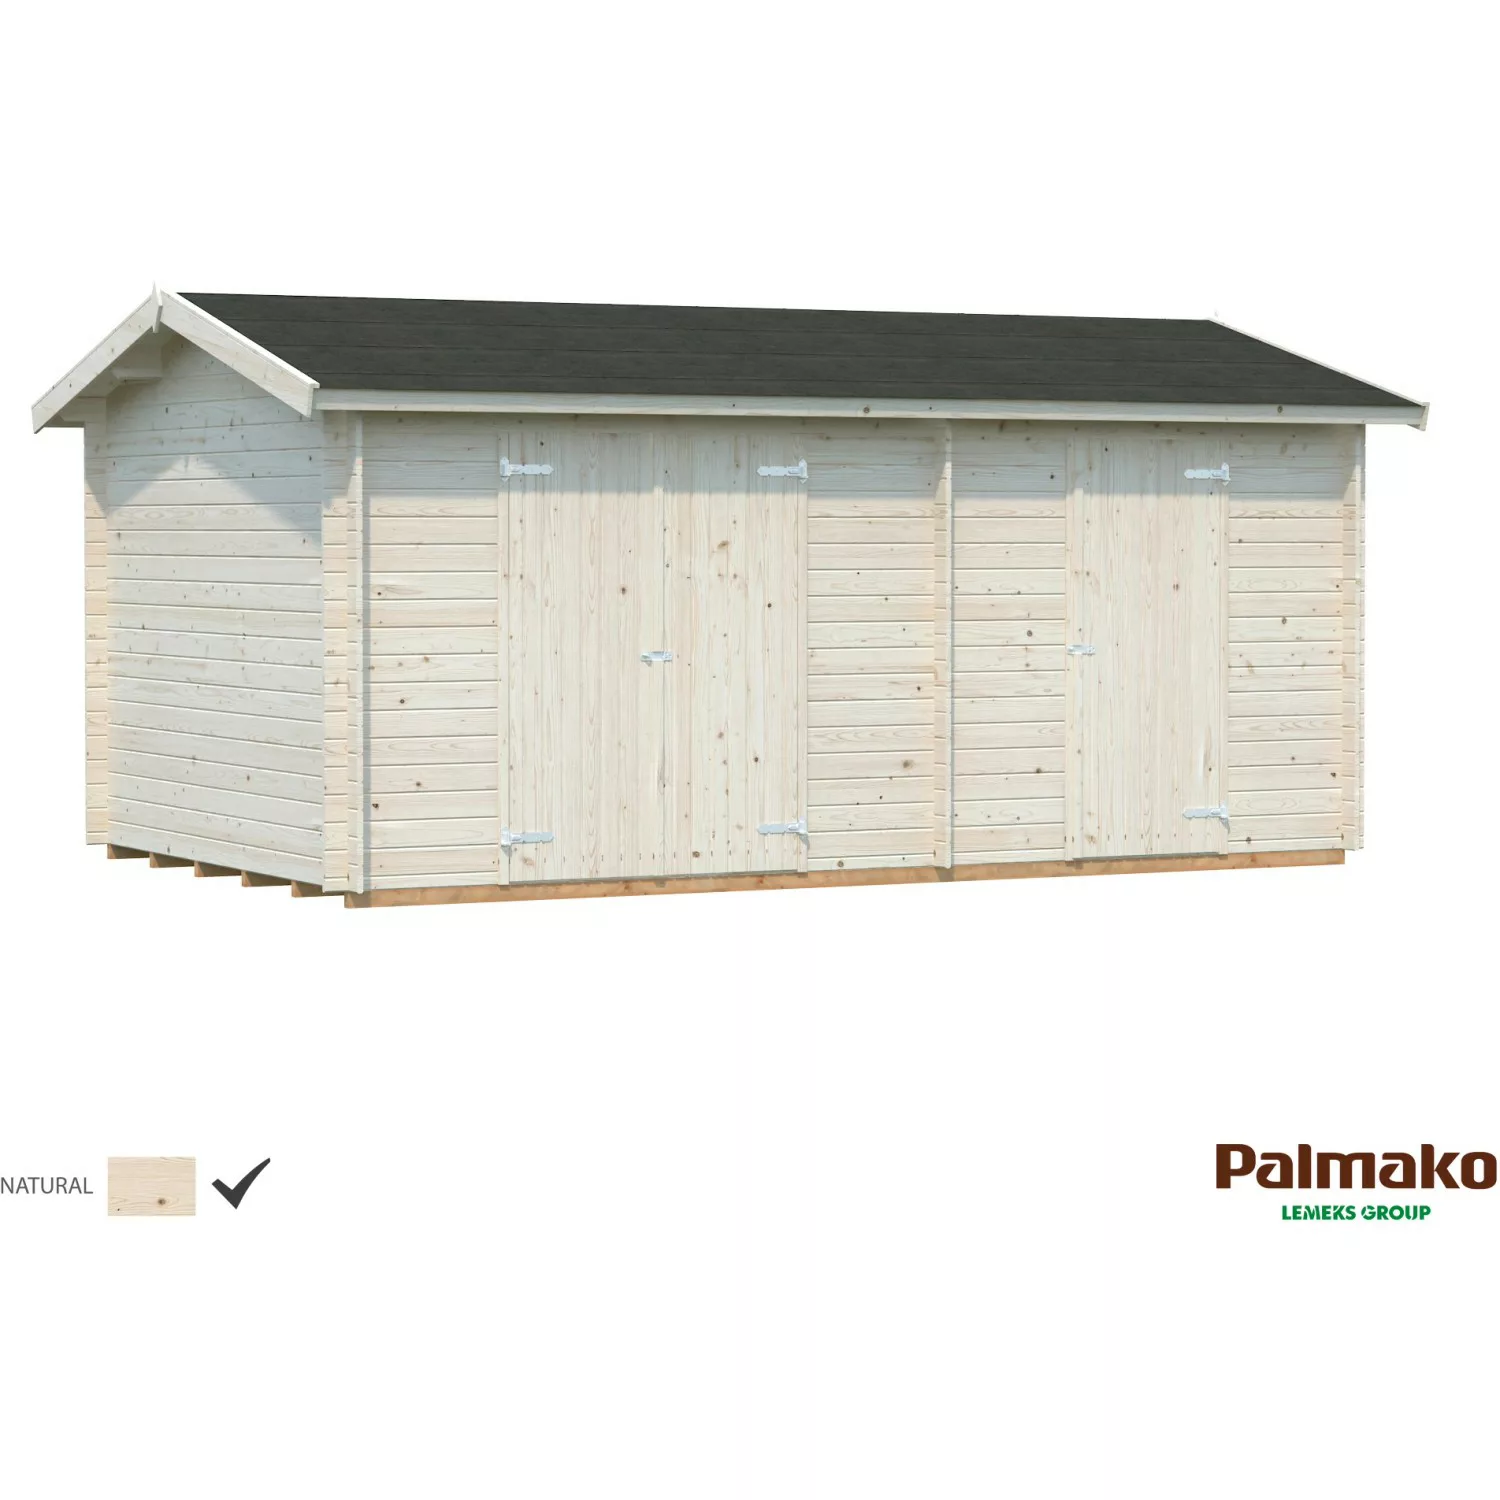 Palmako Jari Holz-Gartenhaus Natur Satteldach Unbehandelt 520 cm x 300 cm günstig online kaufen